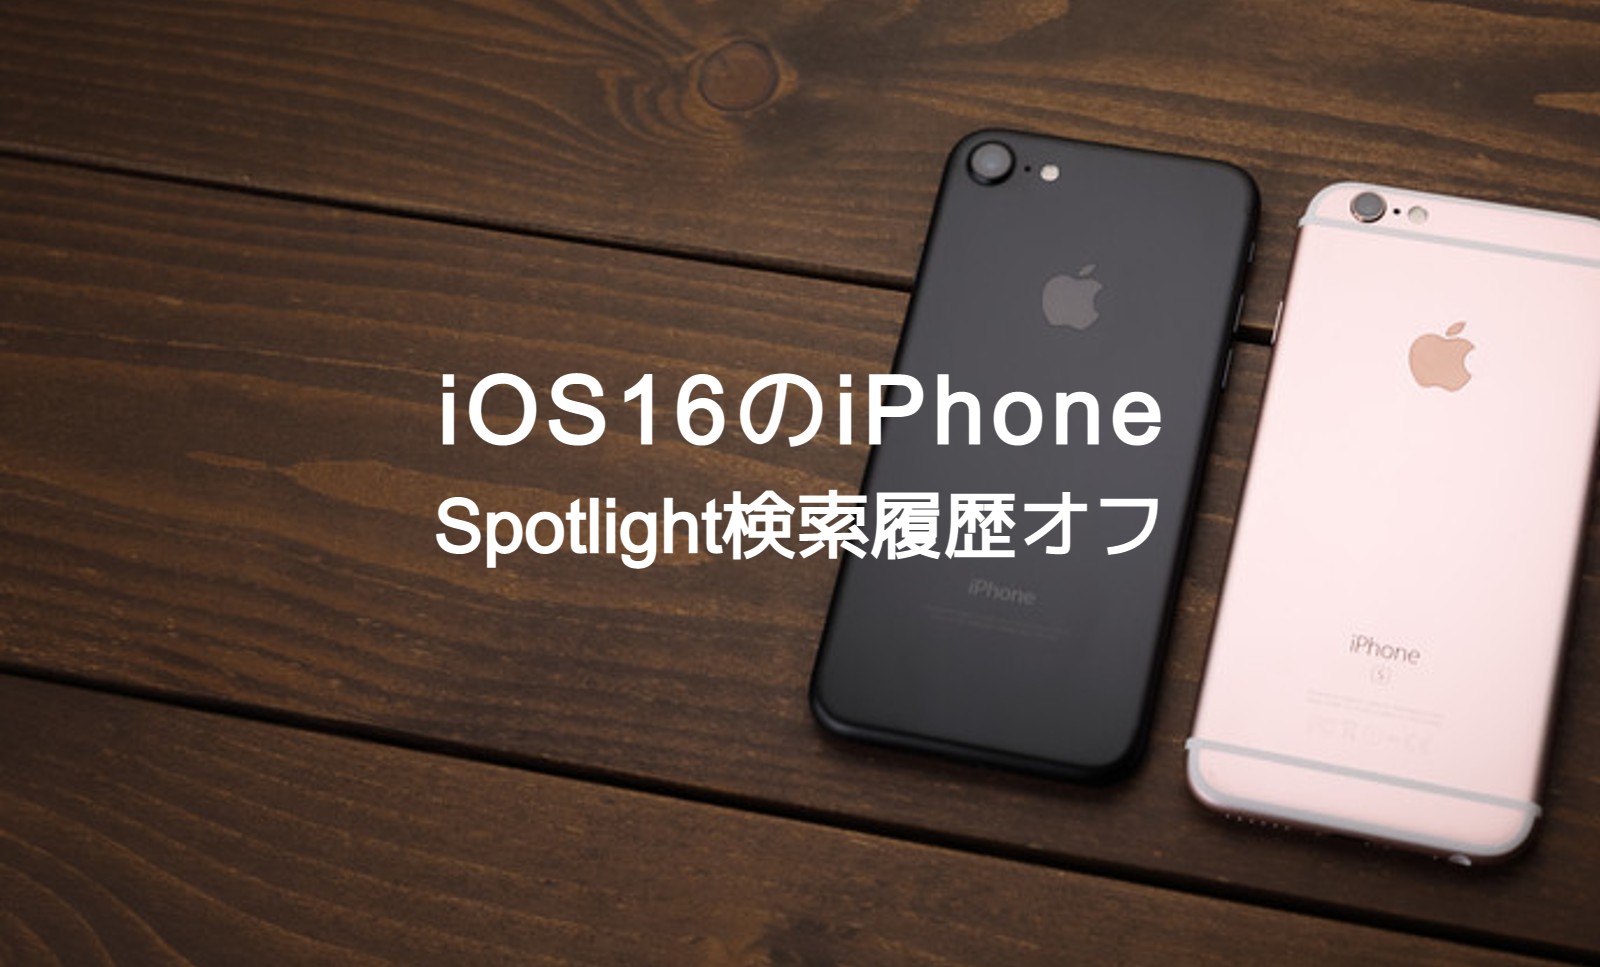 iOS16のiPhoneでSpotlight検索履歴をオフ&非表示にして削除する方法は？のサムネイル画像